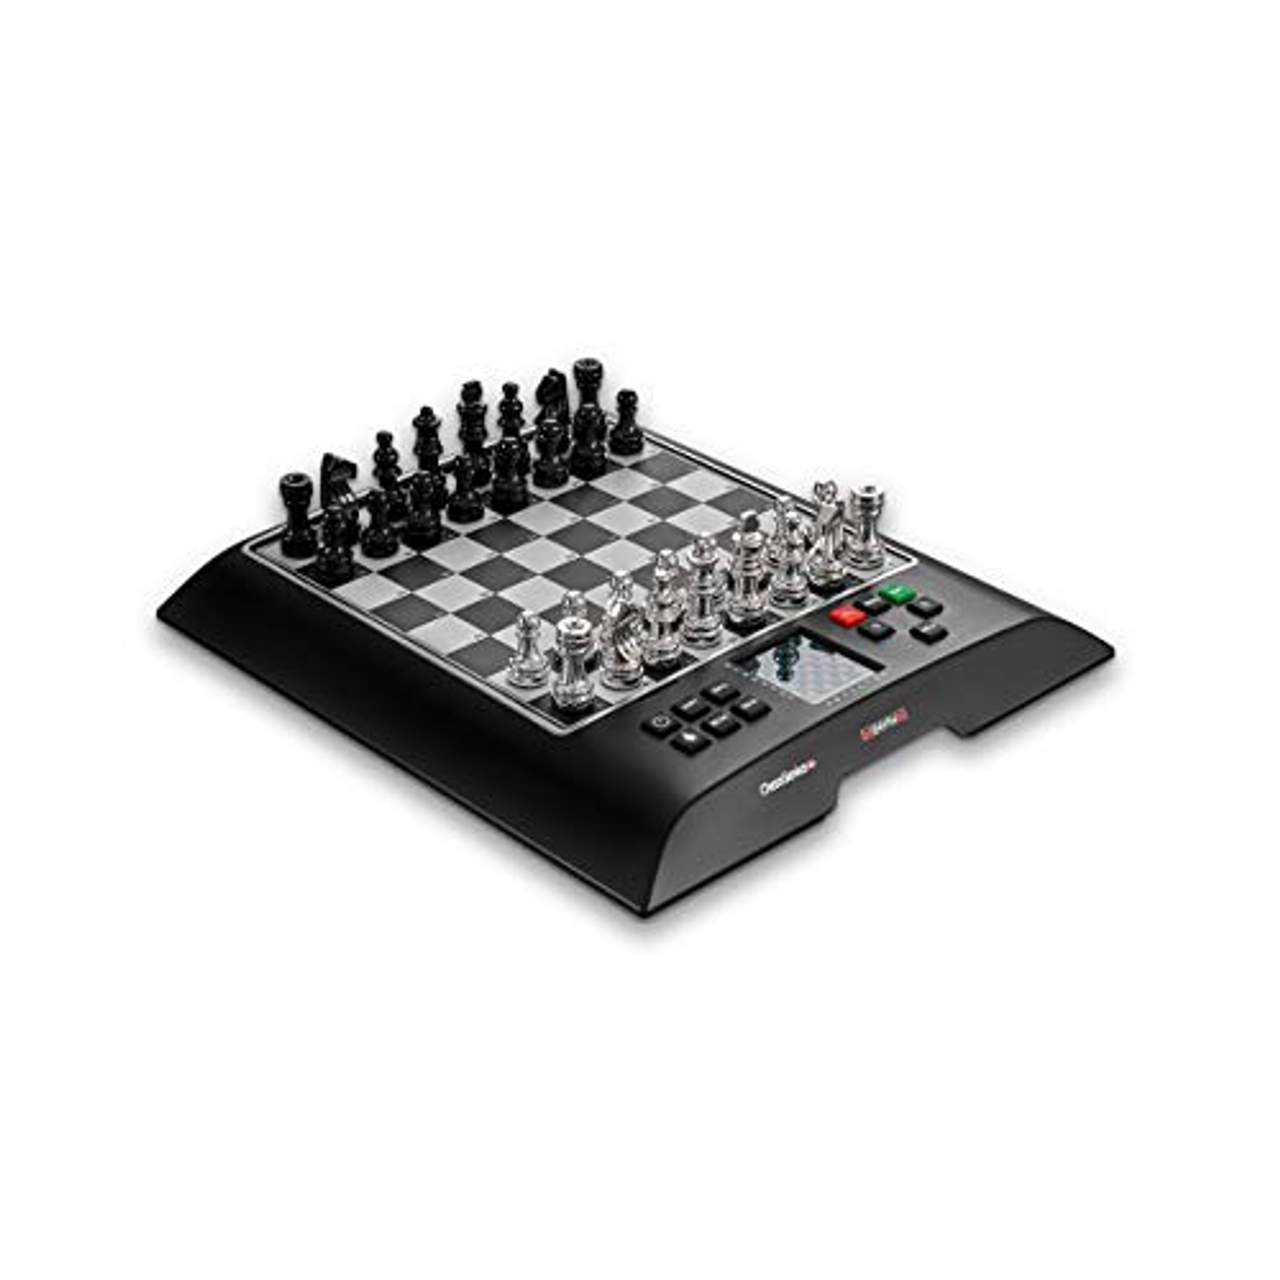  Millennium Schachcomputer ChessGenius Pro